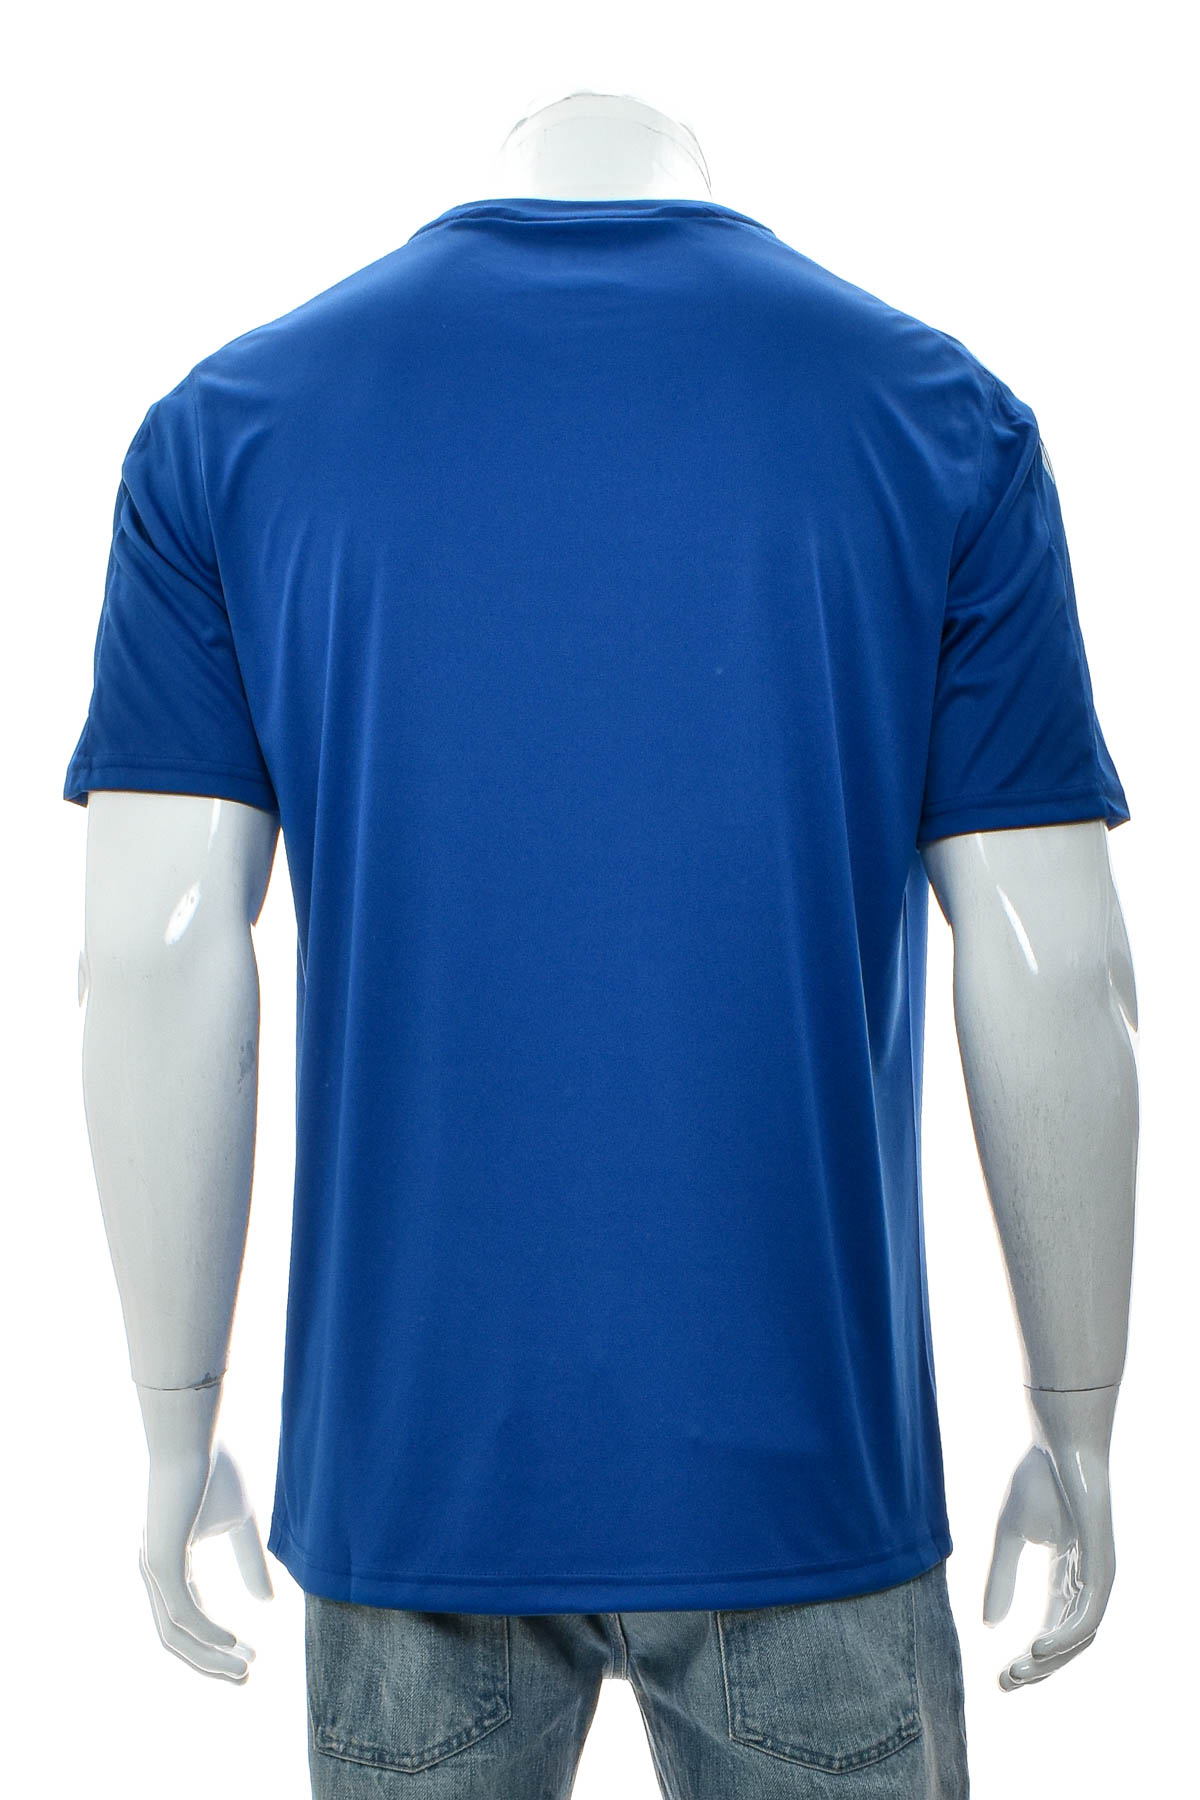 Men's T-shirt - Hummel - 1